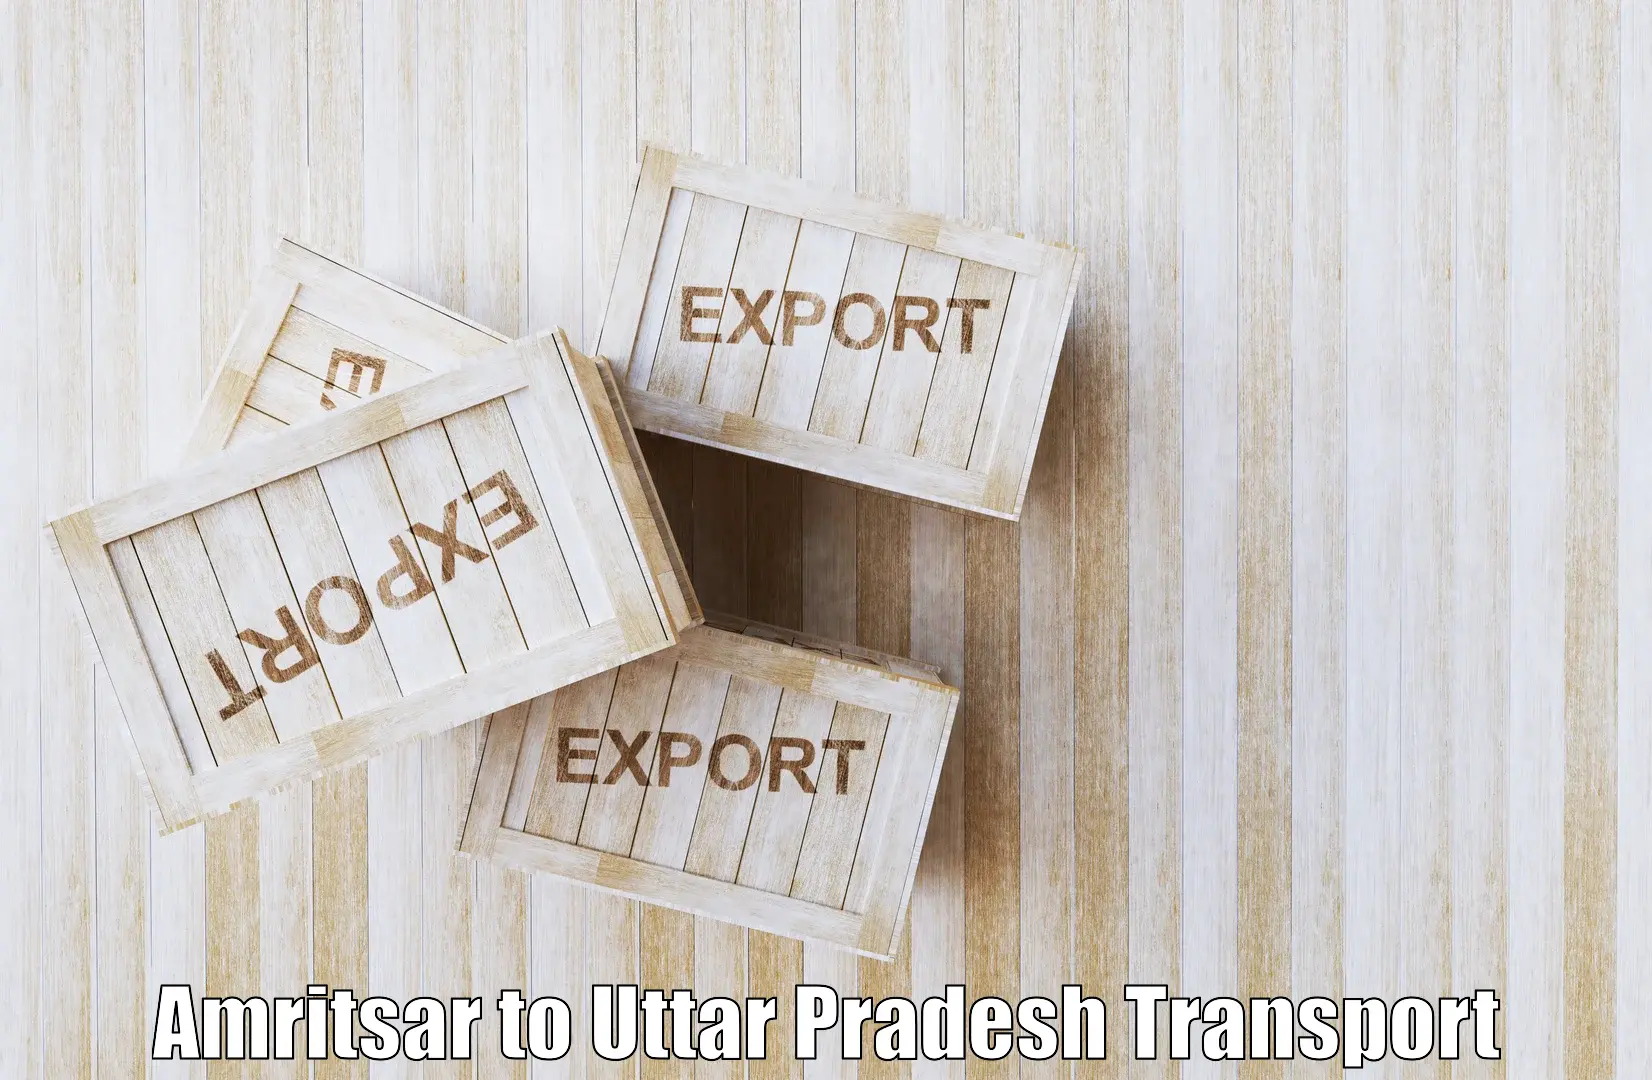 Parcel transport services Amritsar to Nariwari